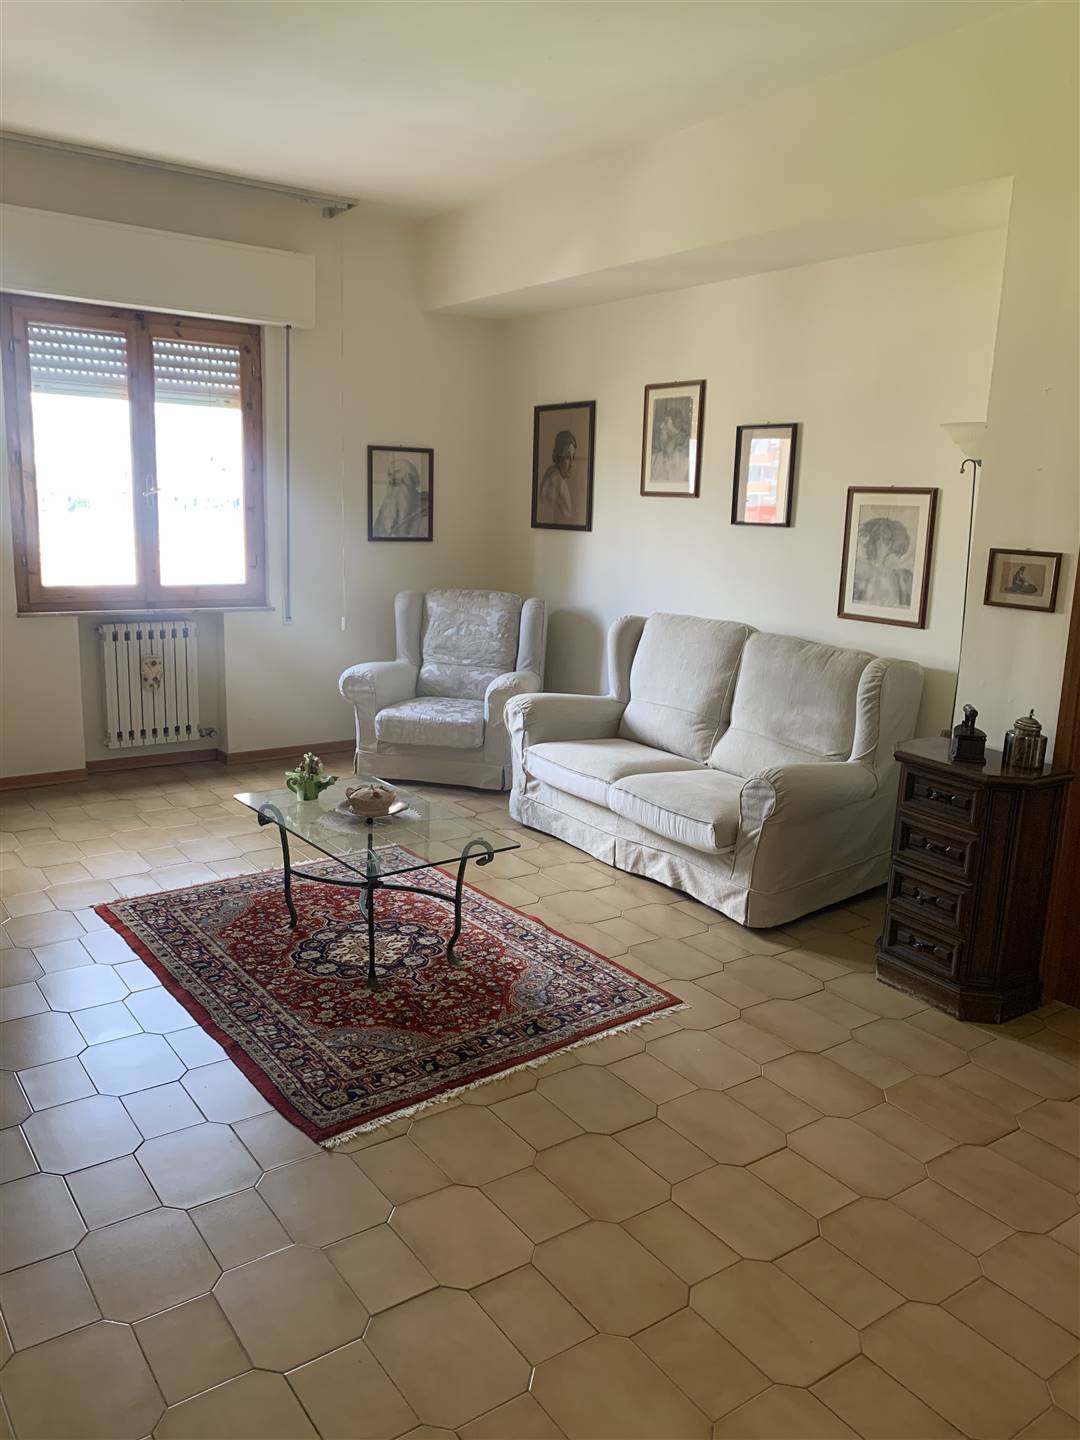 Appartamento in vendita a Certaldo, 5 locali, zona Località: SEMI-CENTRO, prezzo € 93.000 | PortaleAgenzieImmobiliari.it